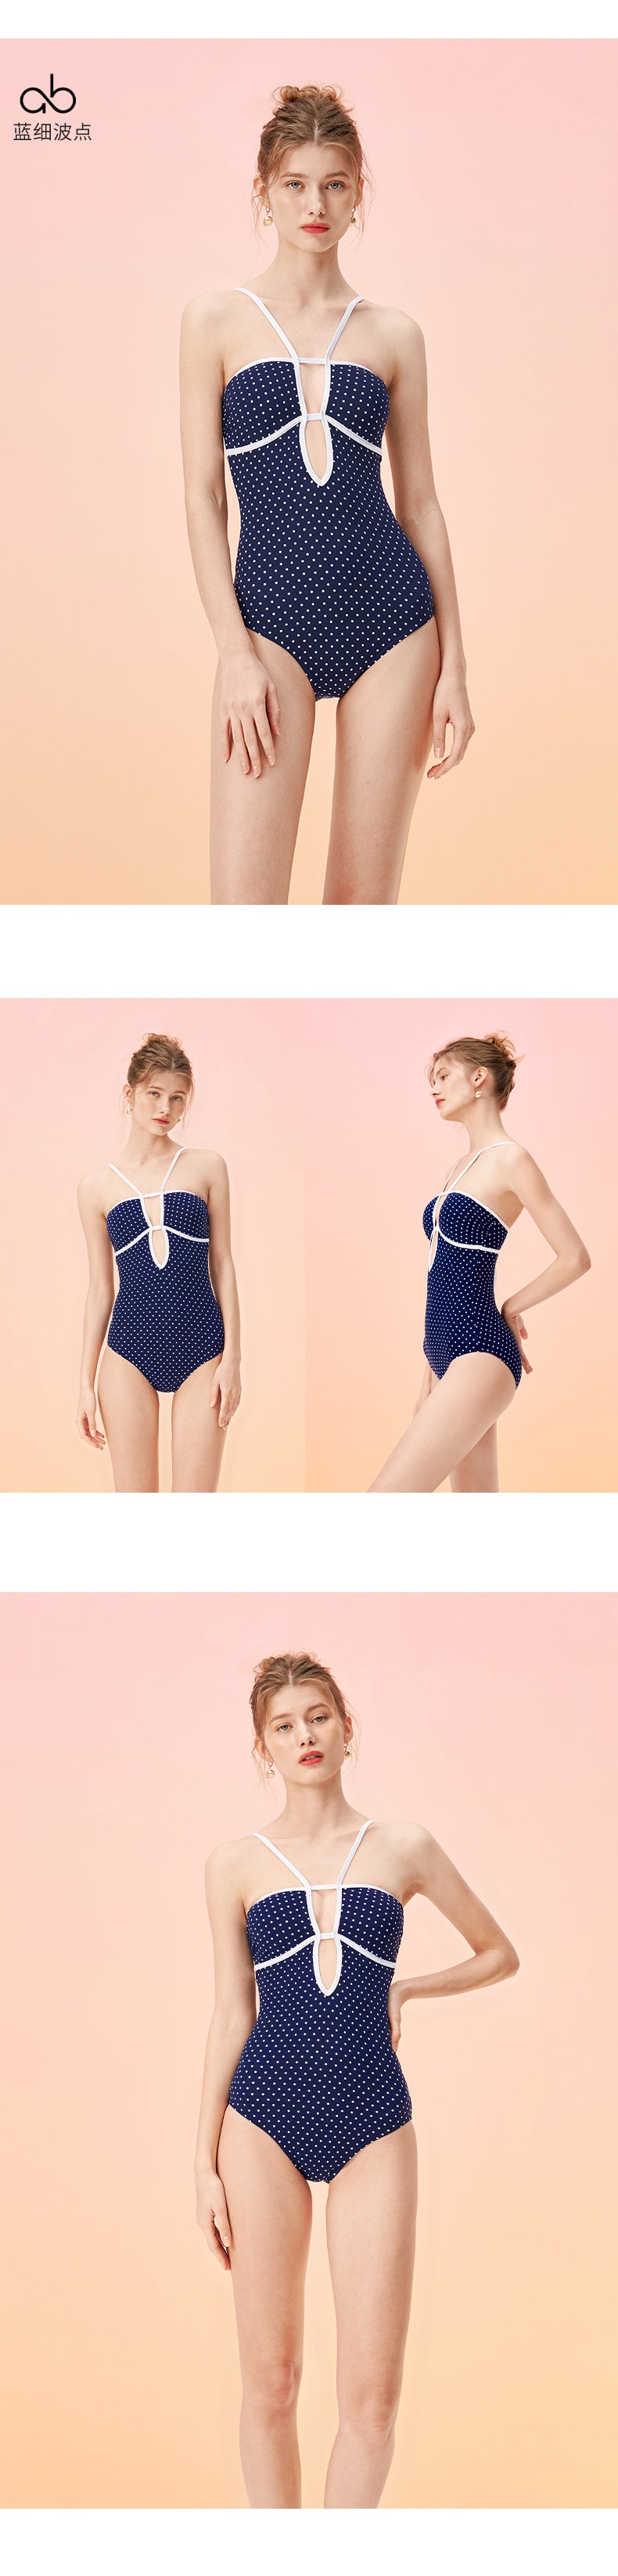 HM Polka Dot Low-cut Bathing Suit Diamond Plaid One Piece Swimsuit